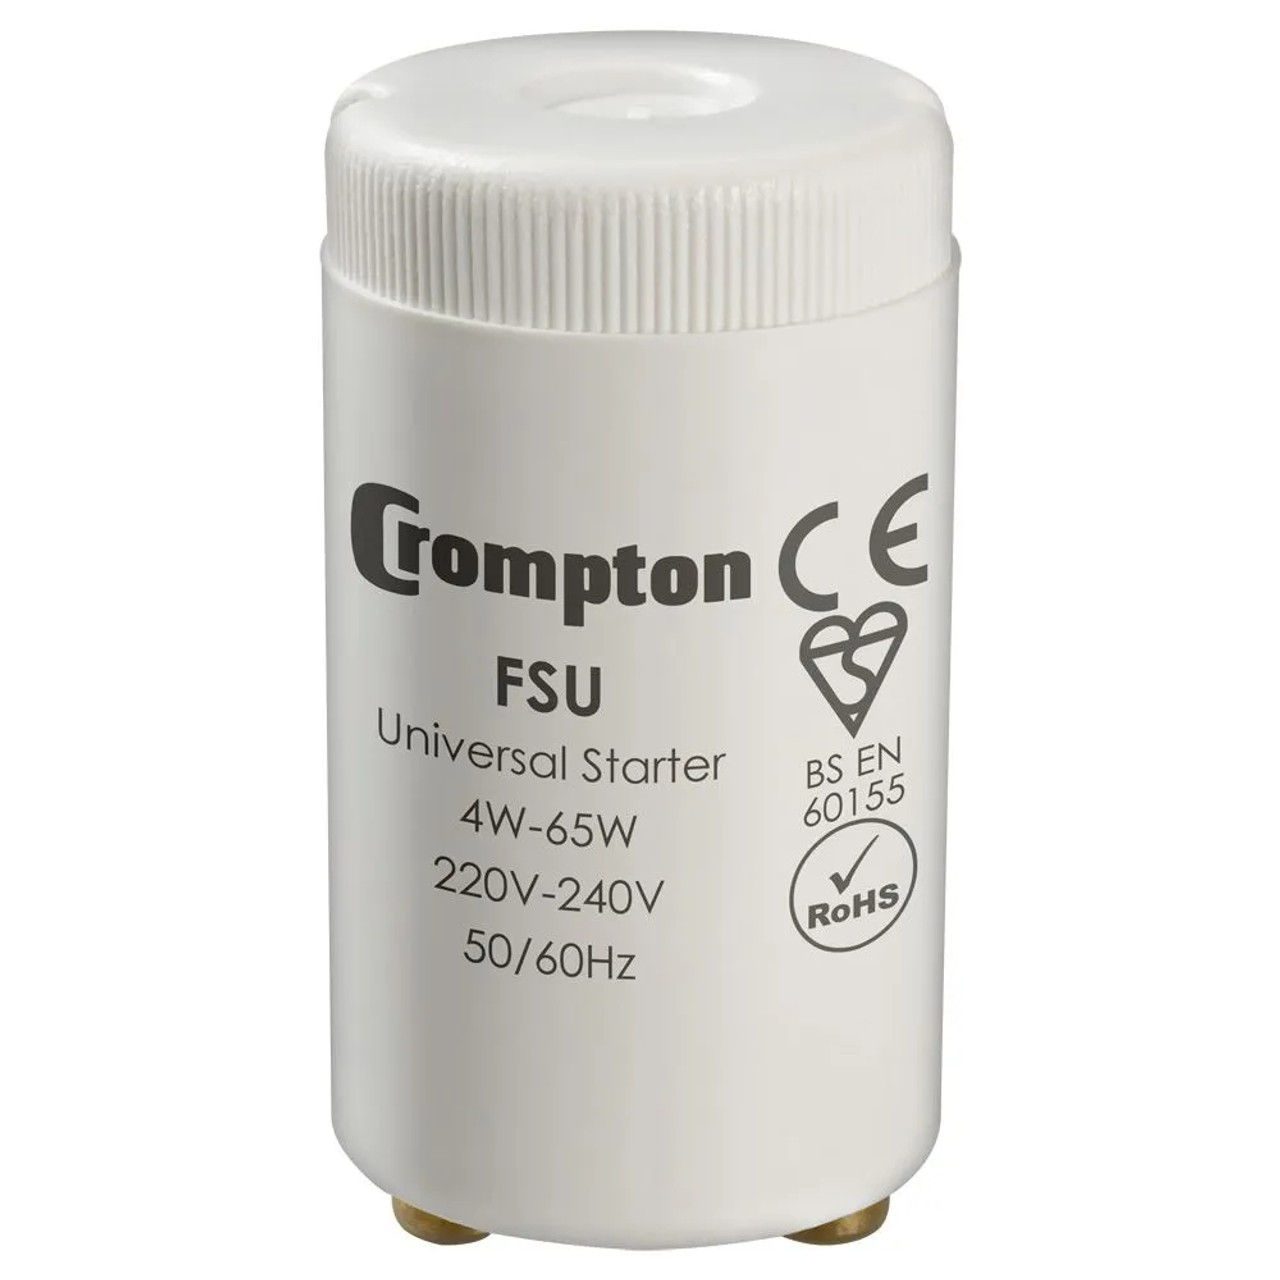 Crompton 4-65W Starter